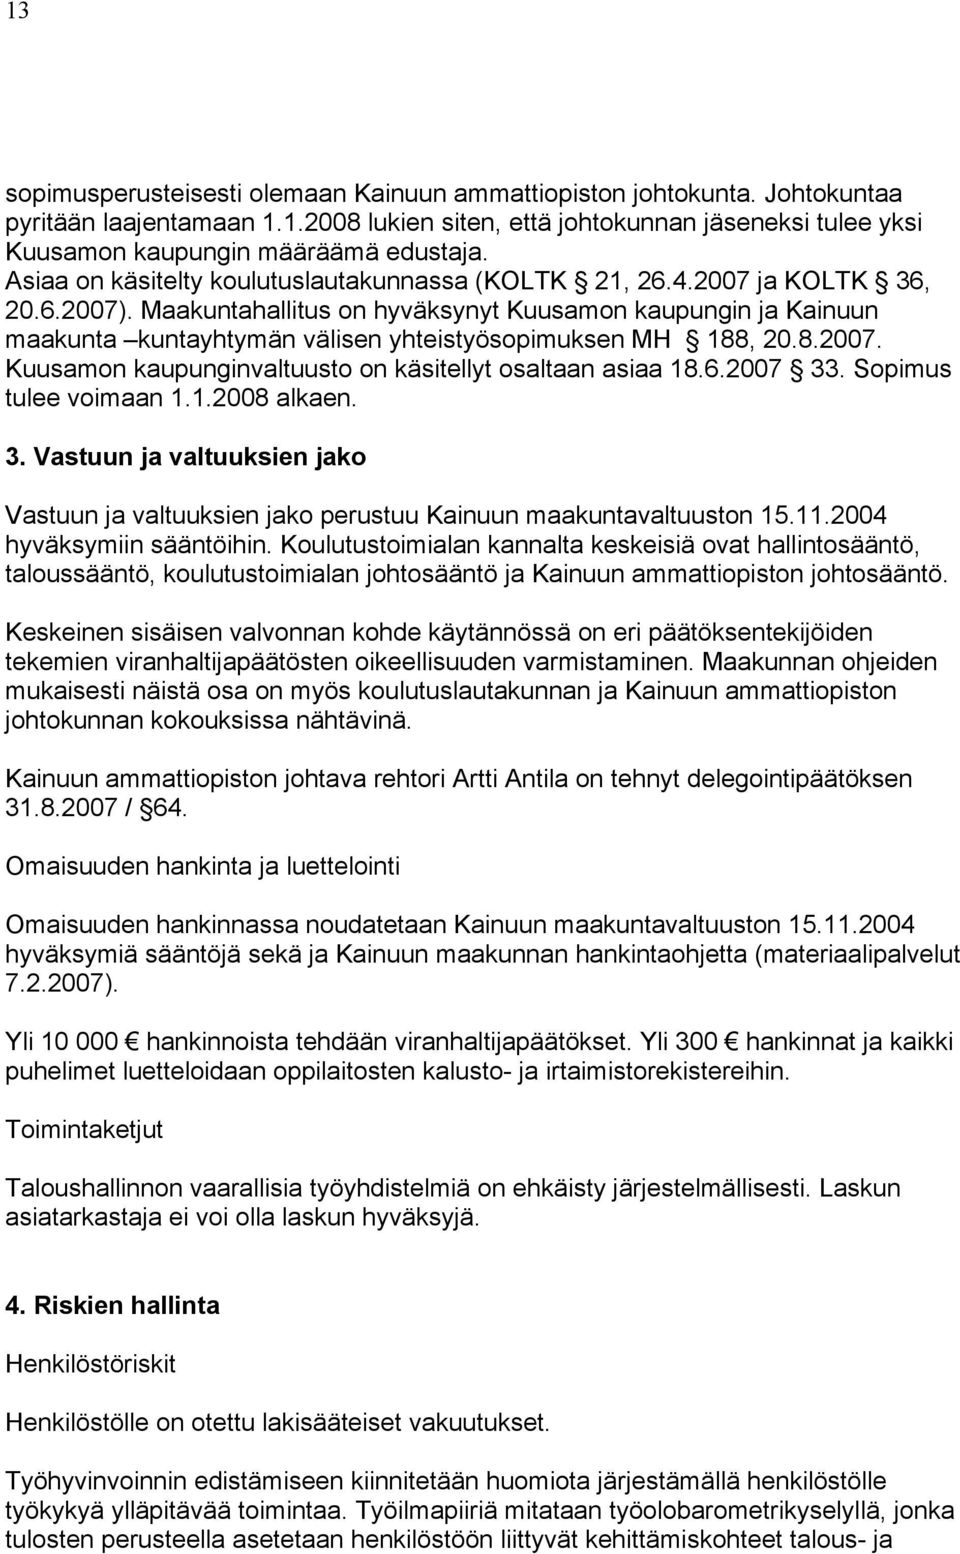 Maakuntahallitus on hyväksynyt Kuusamon kaupungin ja Kainuun maakunta kuntayhtymän välisen yhteistyösopimuksen MH 188, 20.8.2007. Kuusamon kaupunginvaltuusto on käsitellyt osaltaan asiaa 18.6.2007 33.